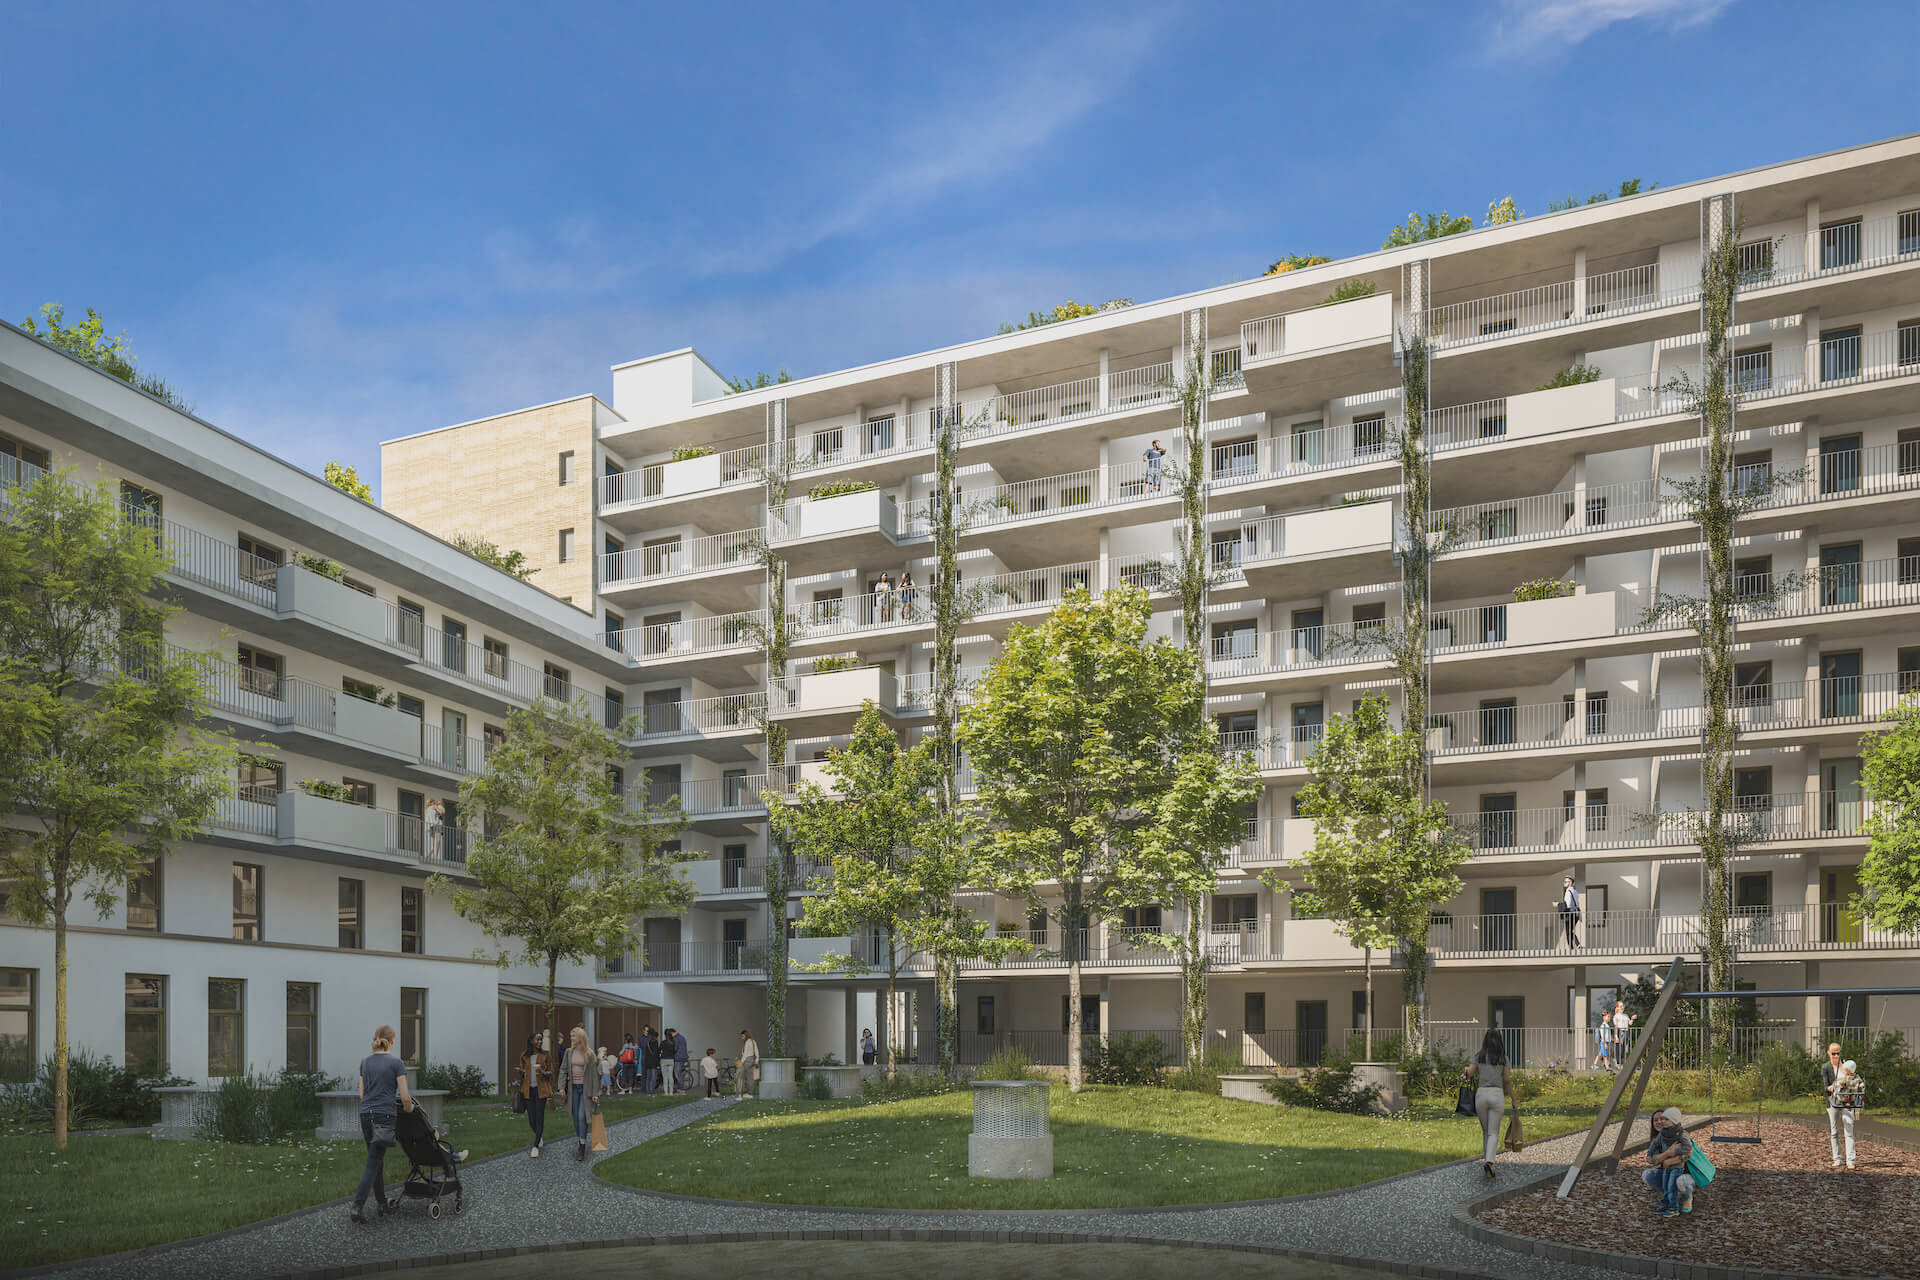 Architektur Visualisierung und 3D Rendering für Wohnbauprojekte, Bayernkaserne